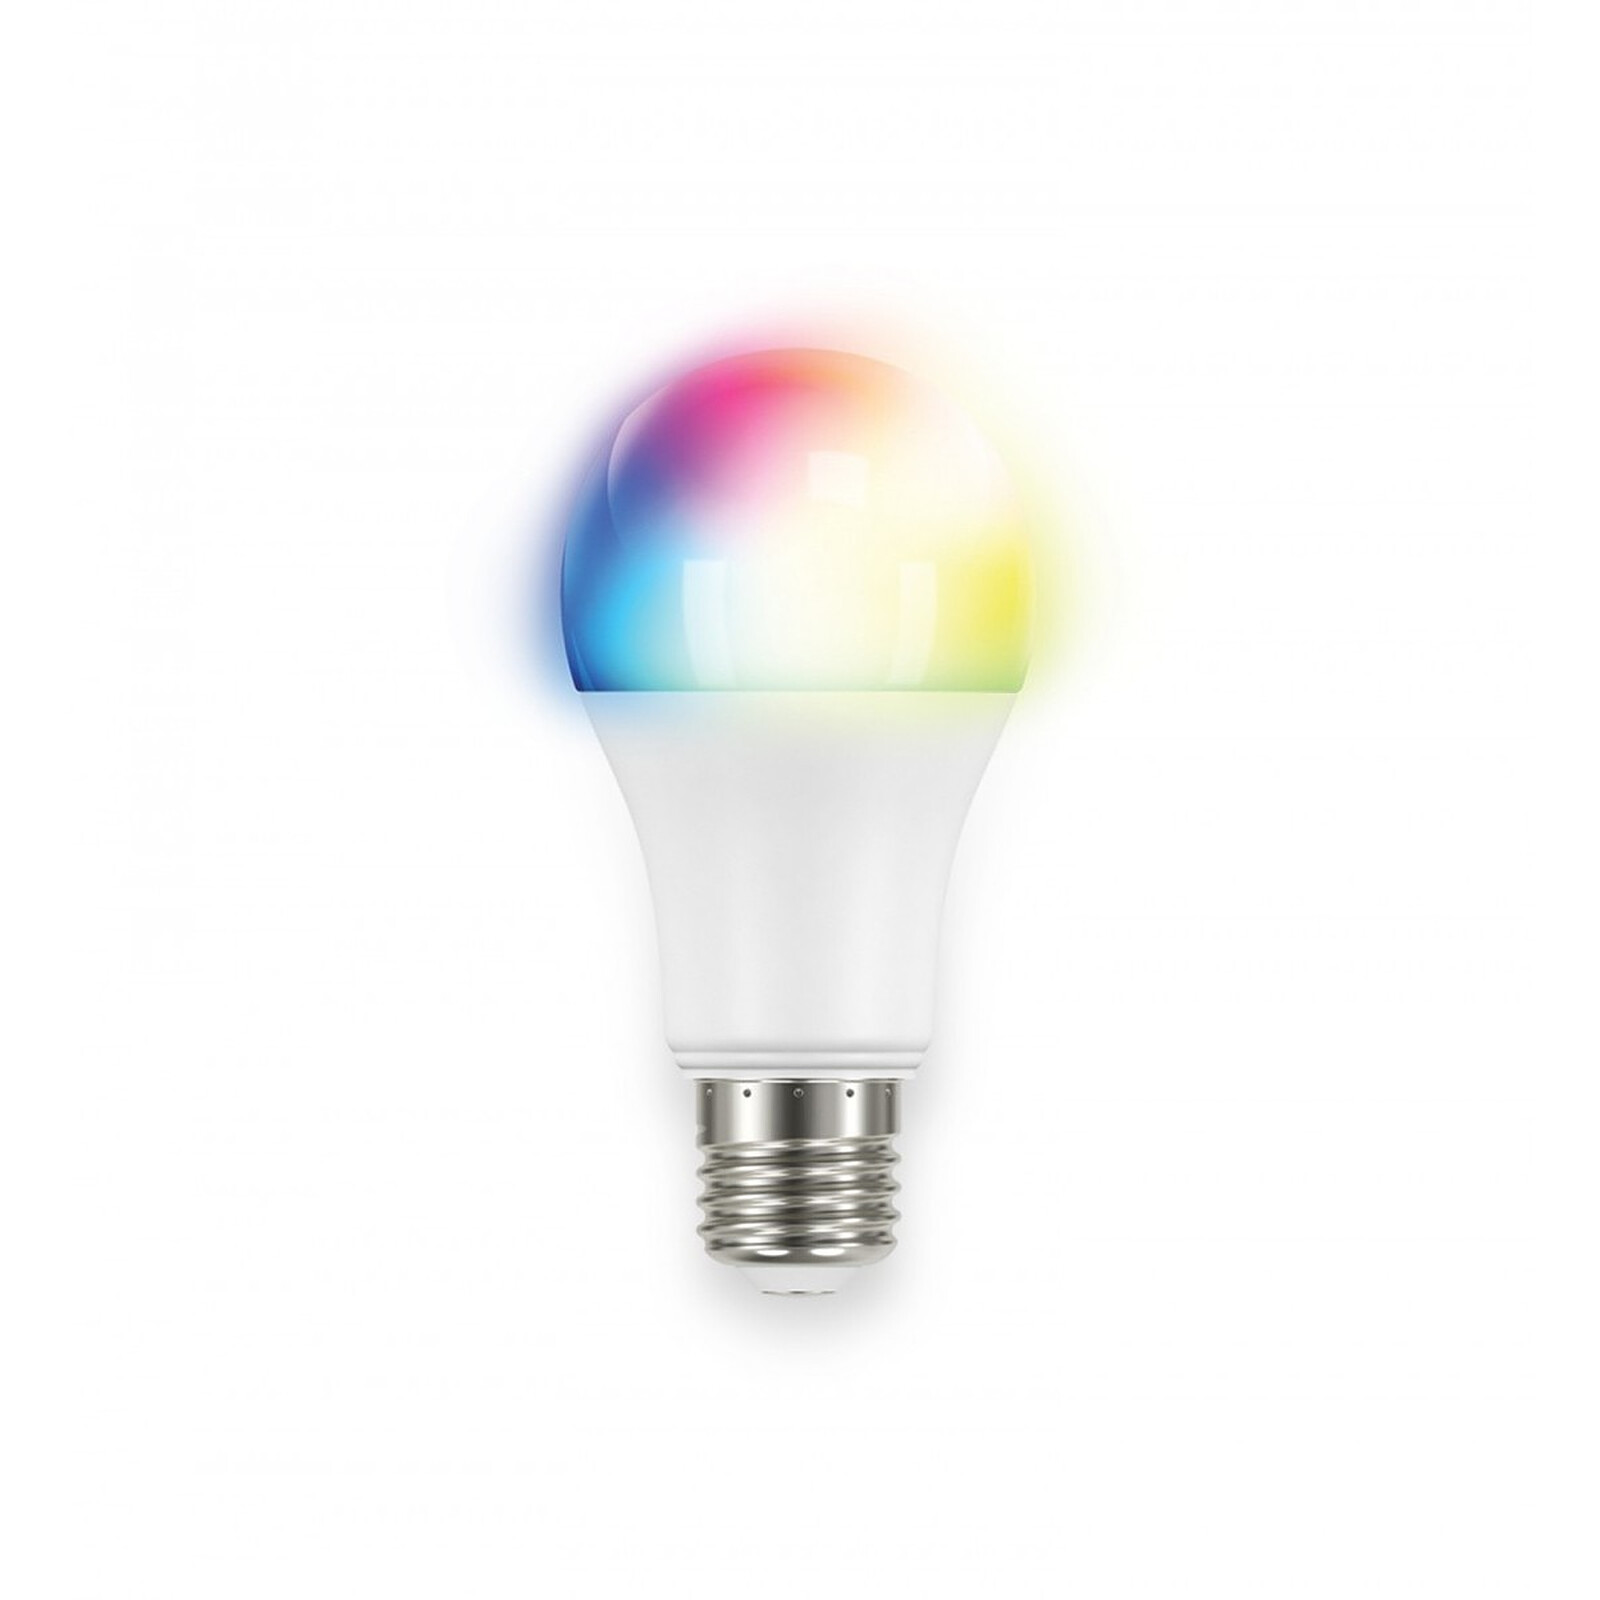 Aeotec - Ampoule connectée LED Multicolore (E27) - LED Bulb 6 Multi-color -  Aeotec - Ampoule connectée - LDLC